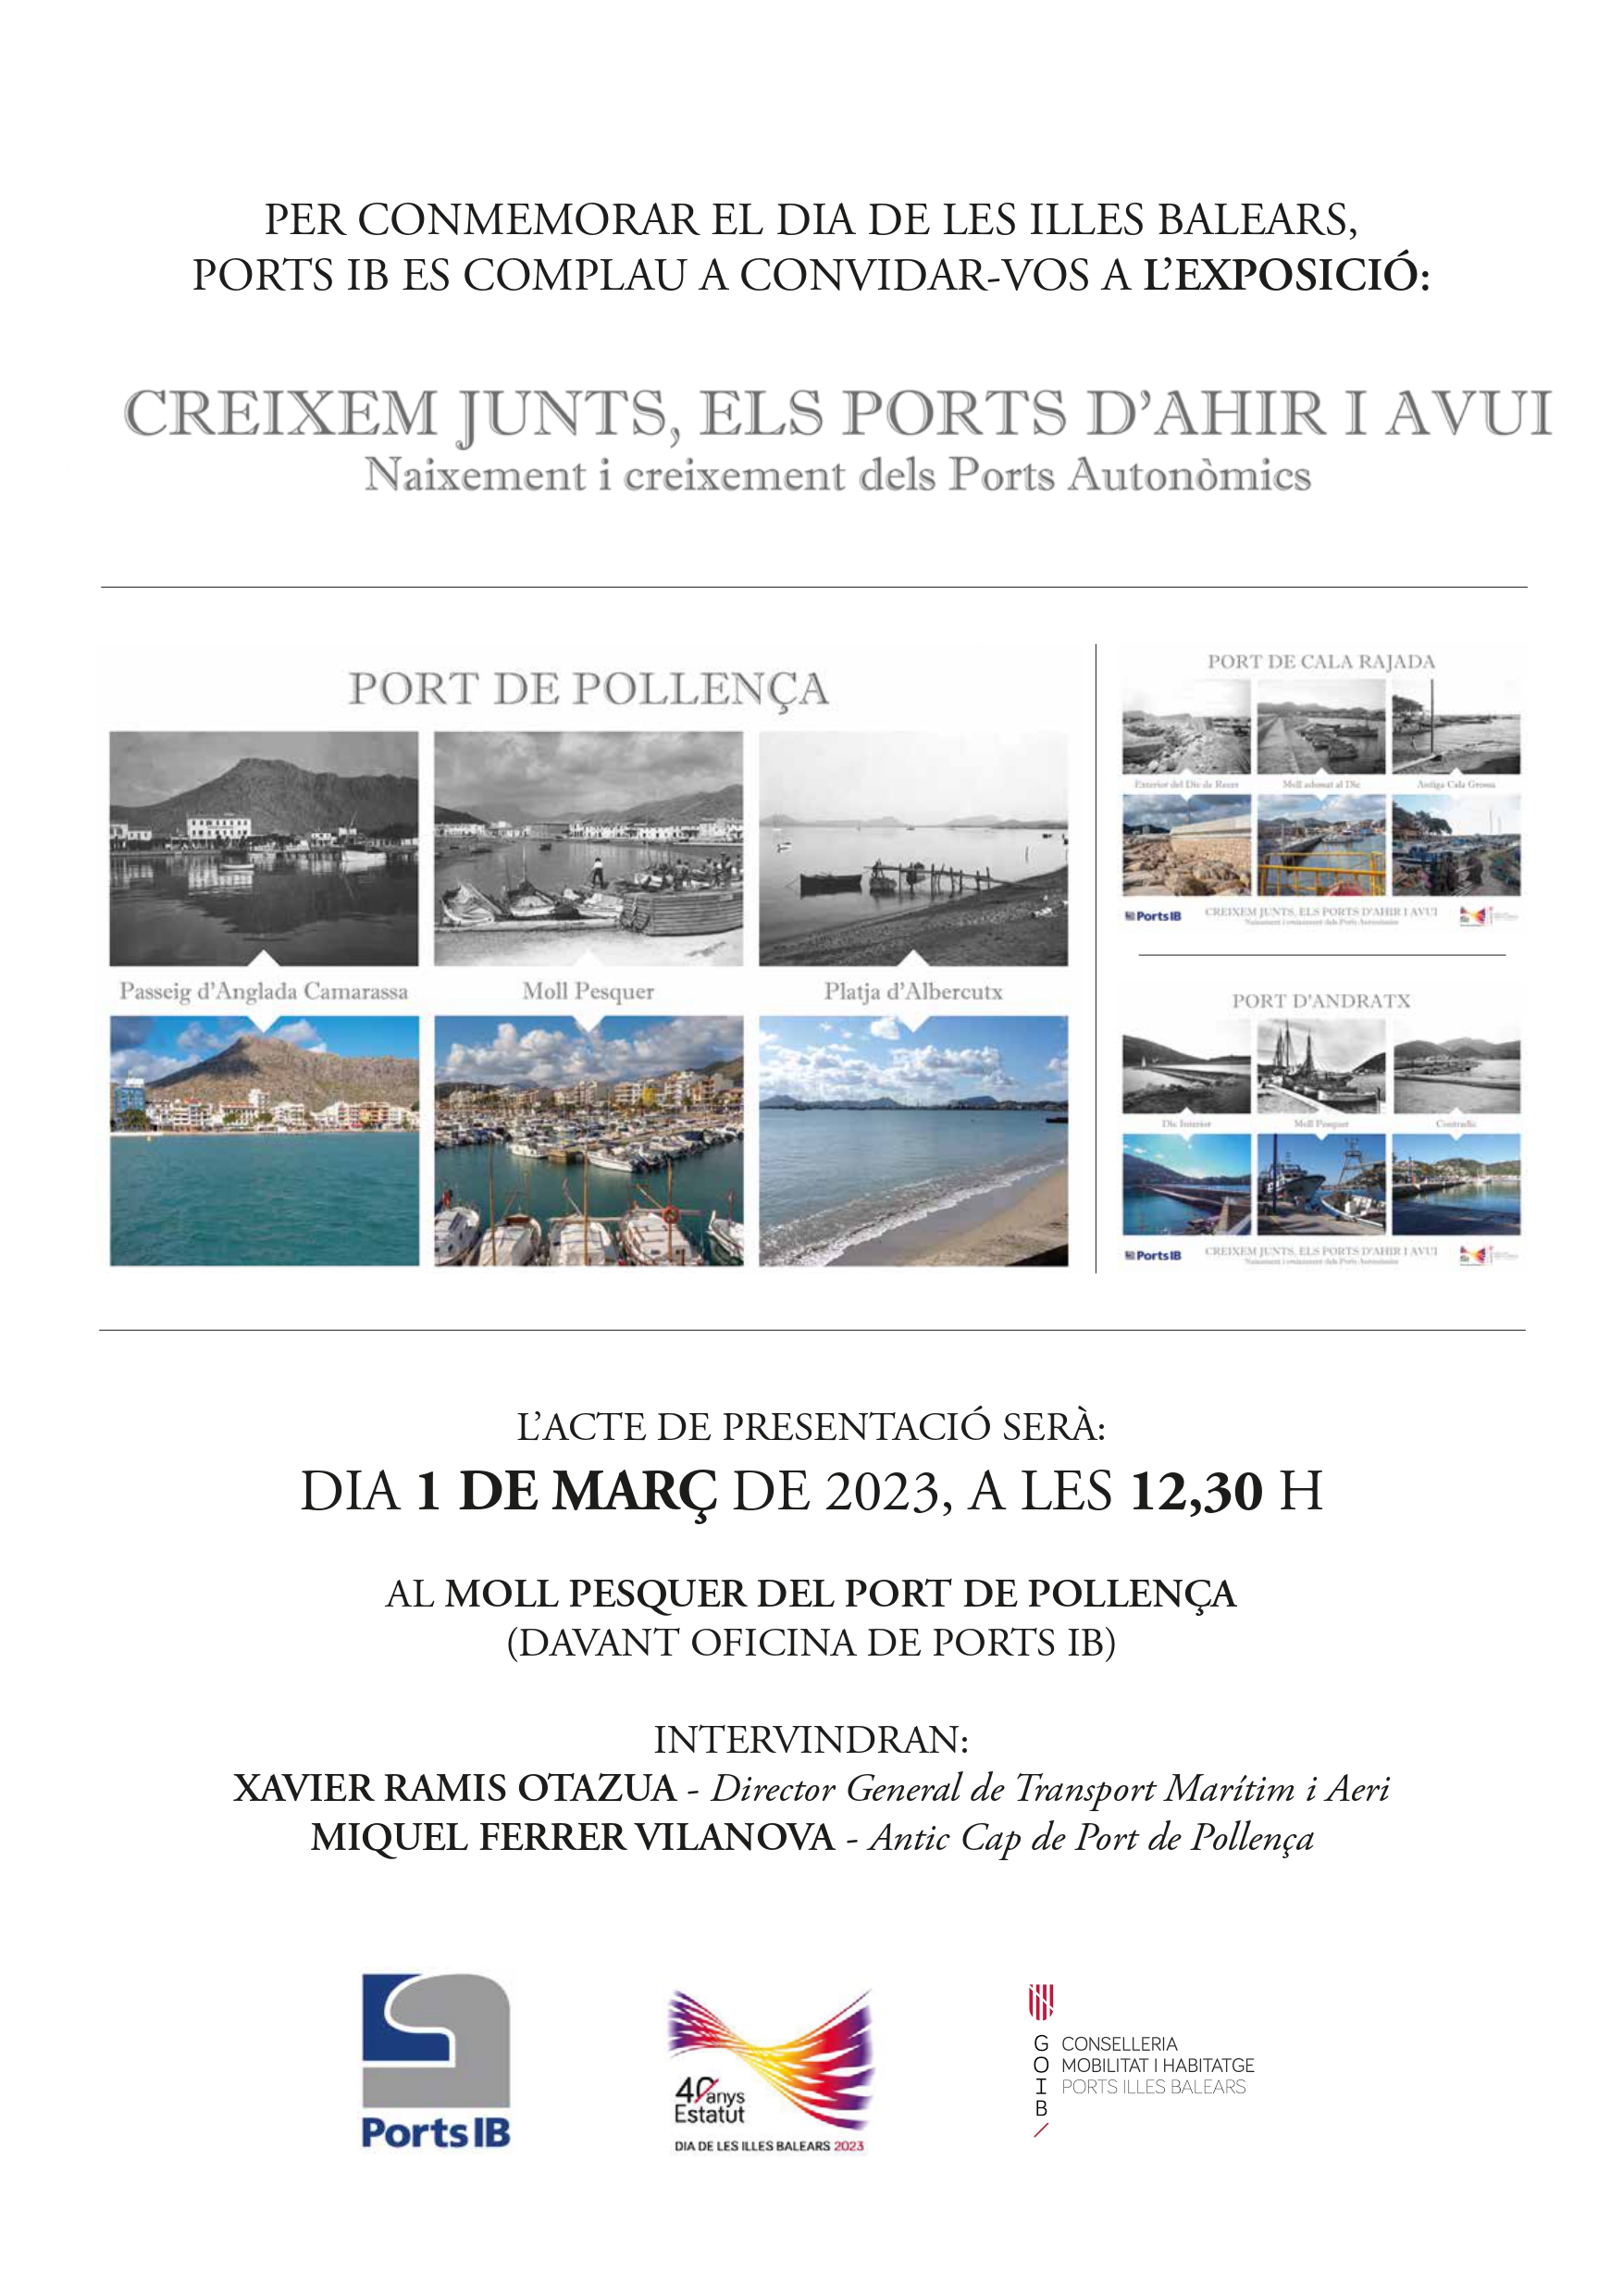 Ports de les Illes Balears exposa fotografies antigues de tretze instal·lacions